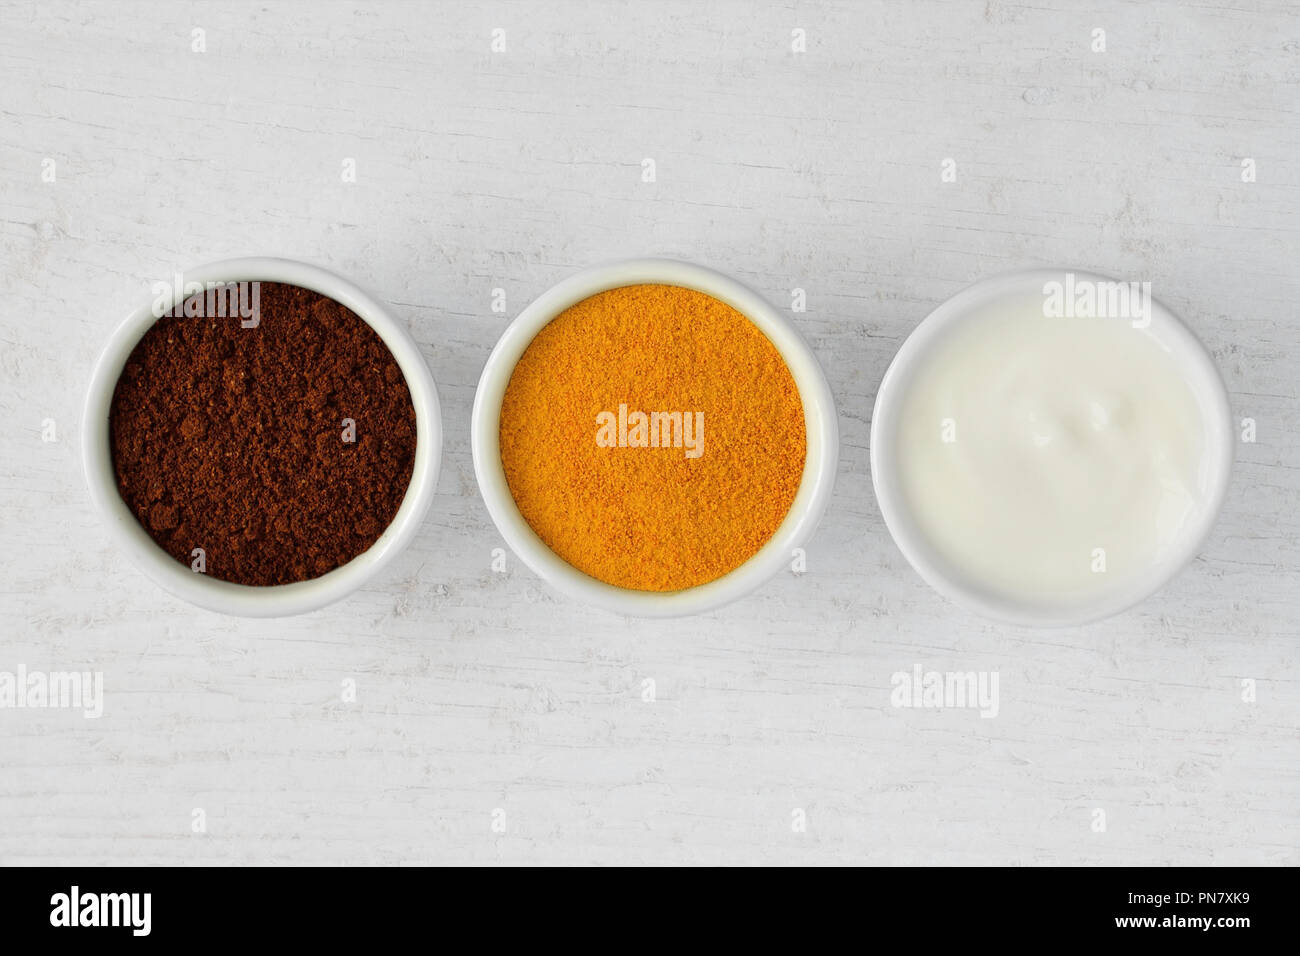 Hausgemachte Gesichtsmaske aus Kaffee, Kurkuma und Joghurt Stockfotografie  - Alamy